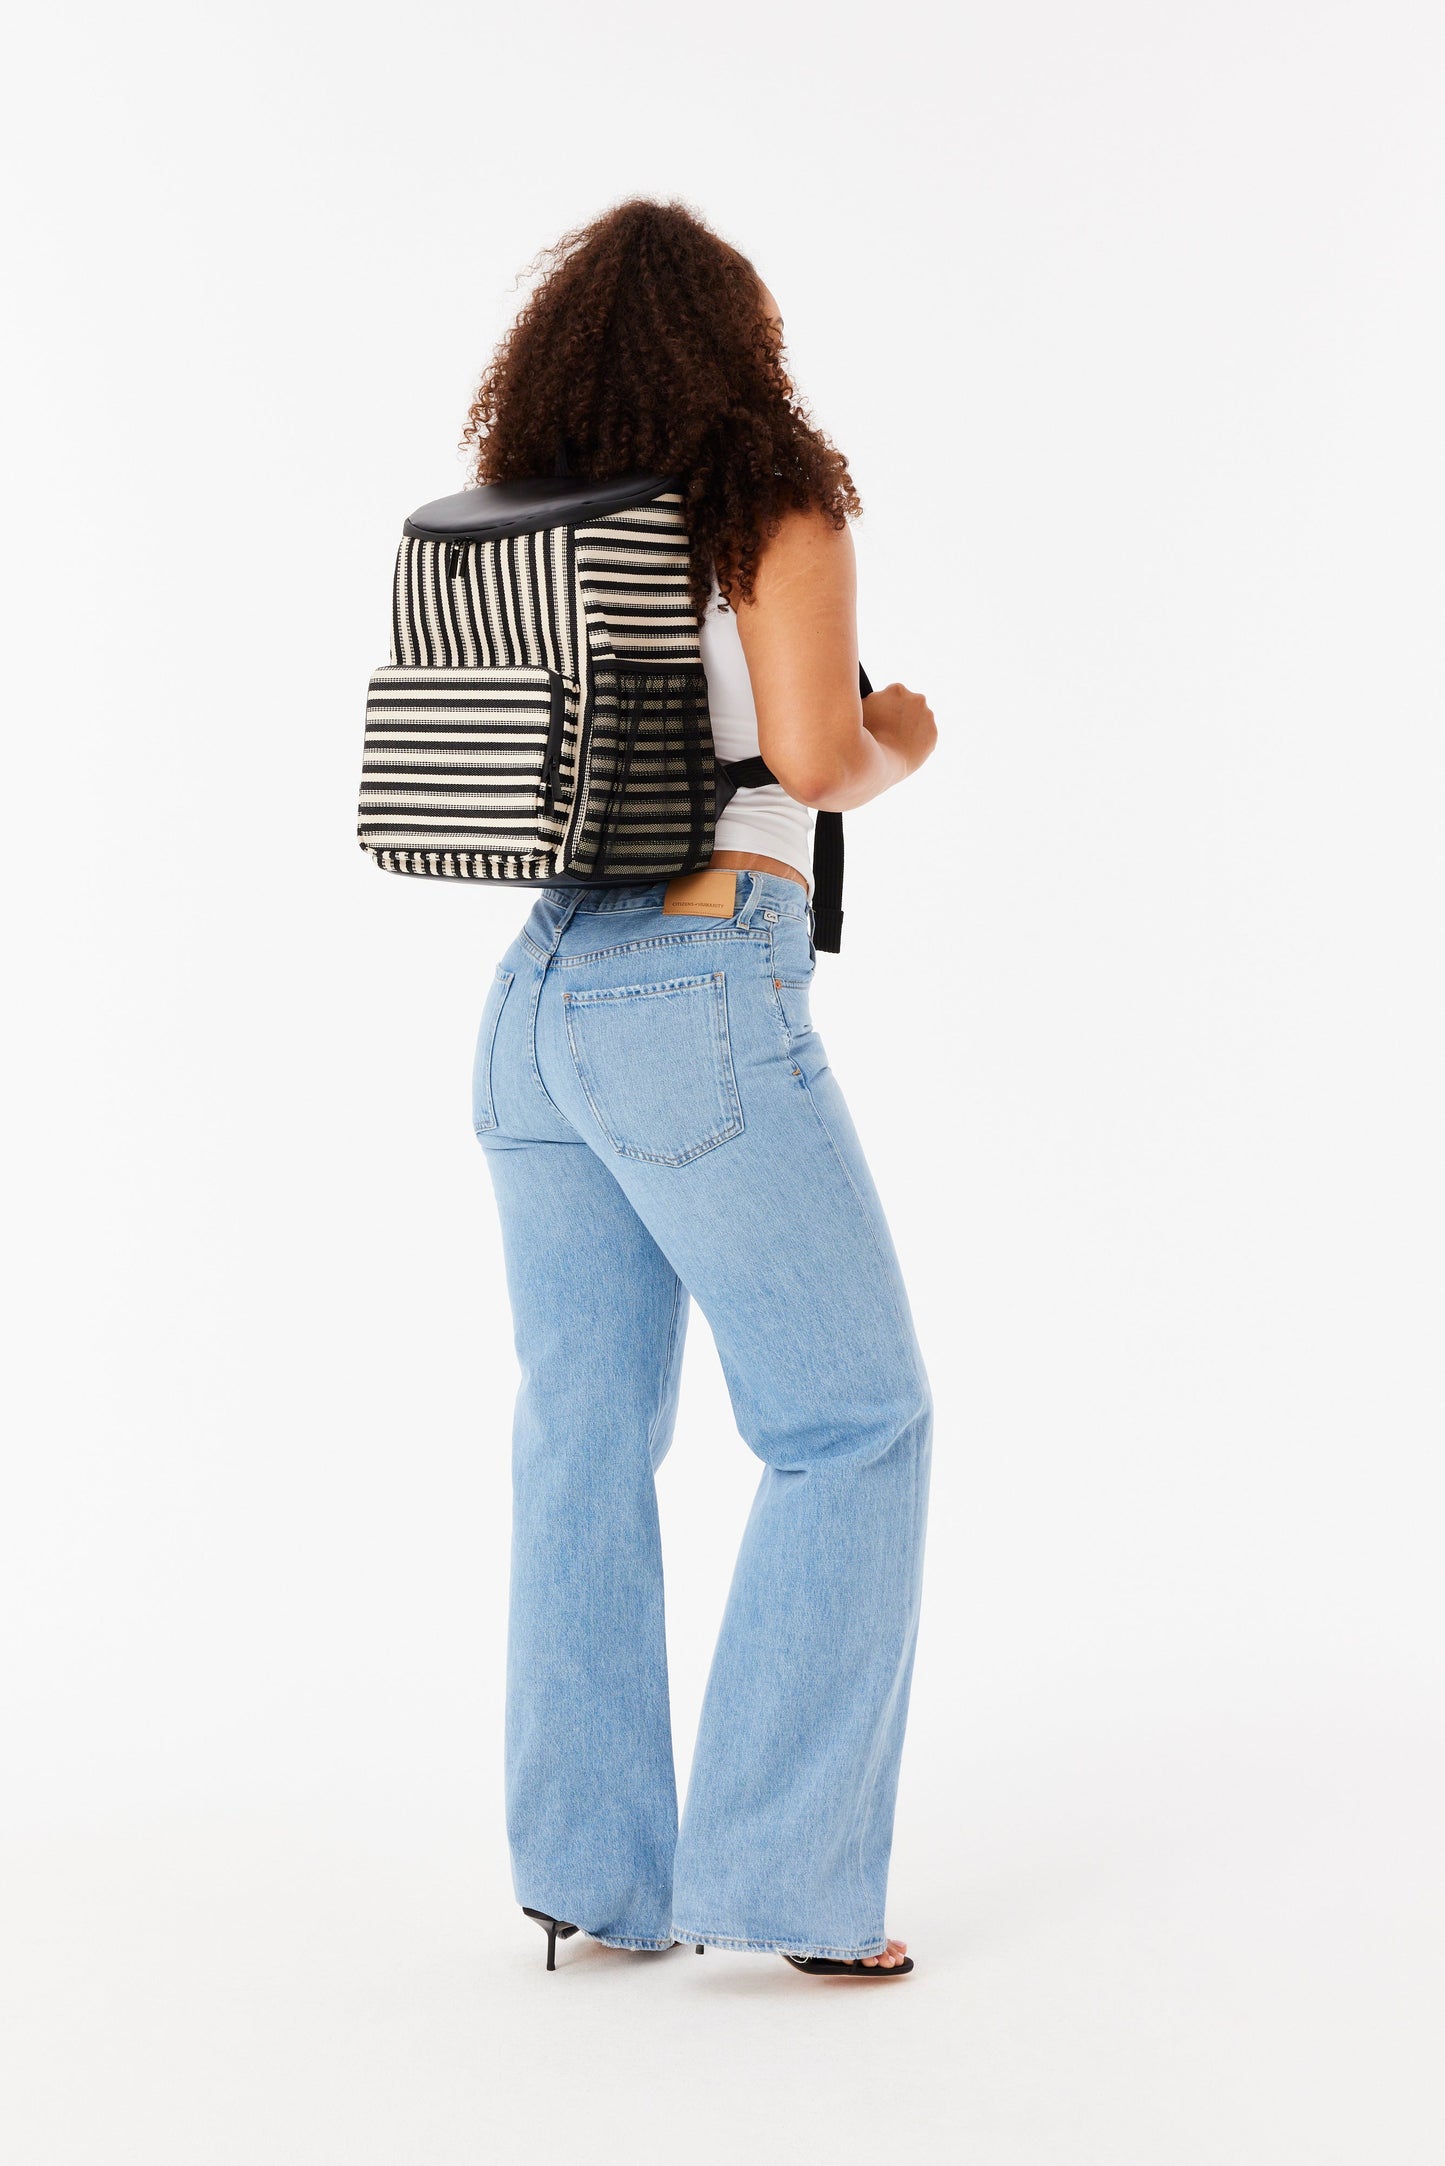 The Backpack Cooler in Black Stripe